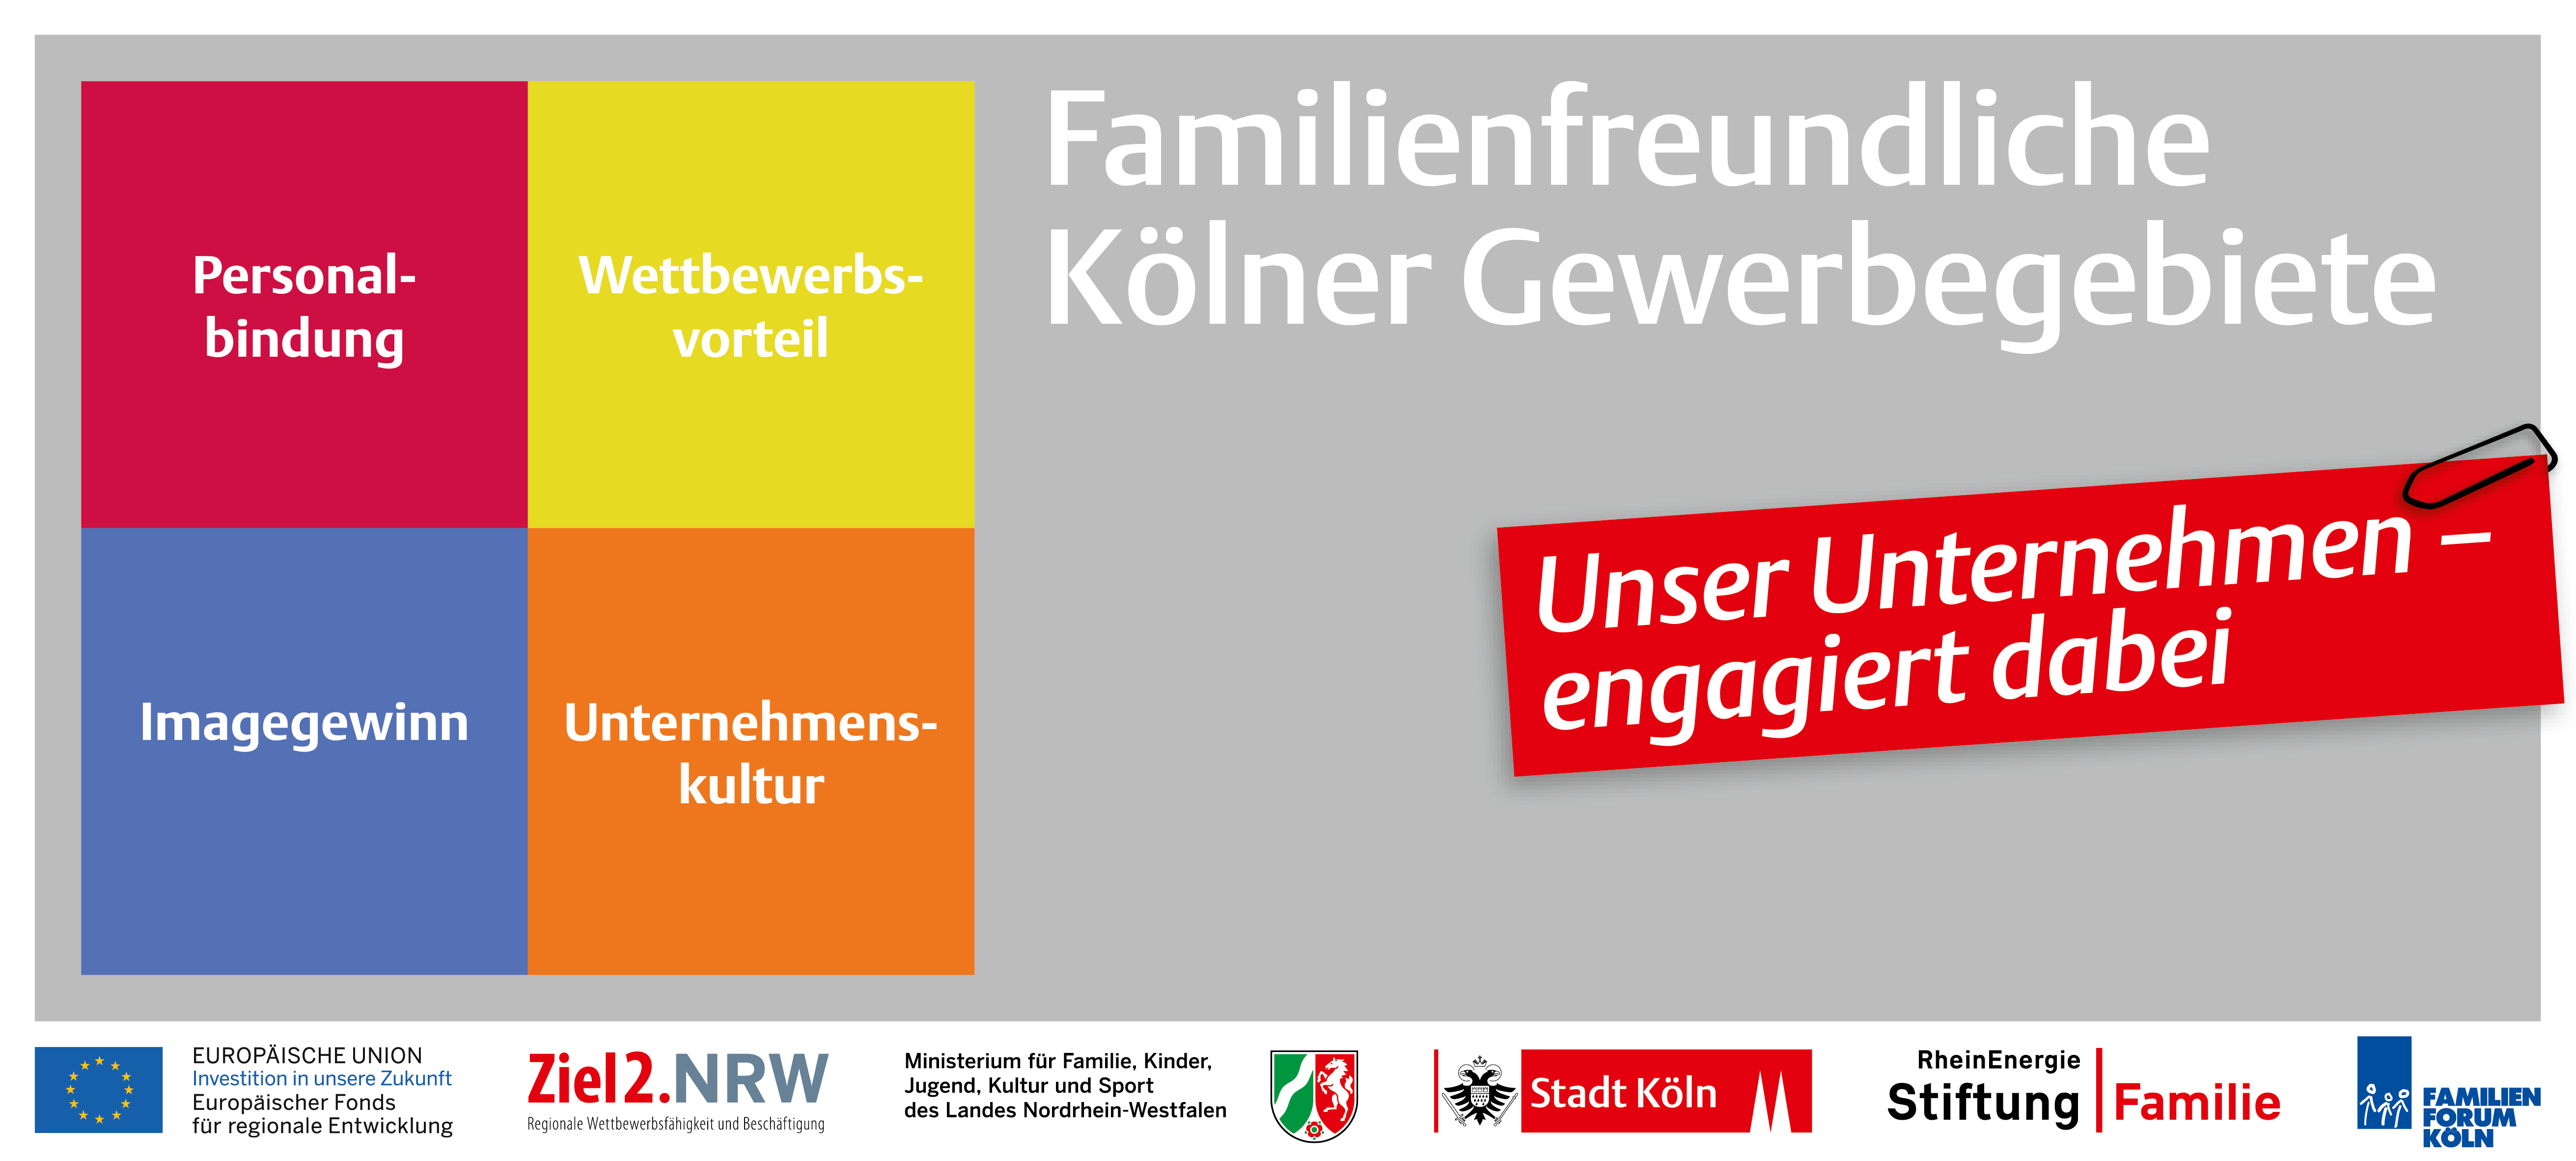 Familienfreundliche Kölner Gewerbebetriebe